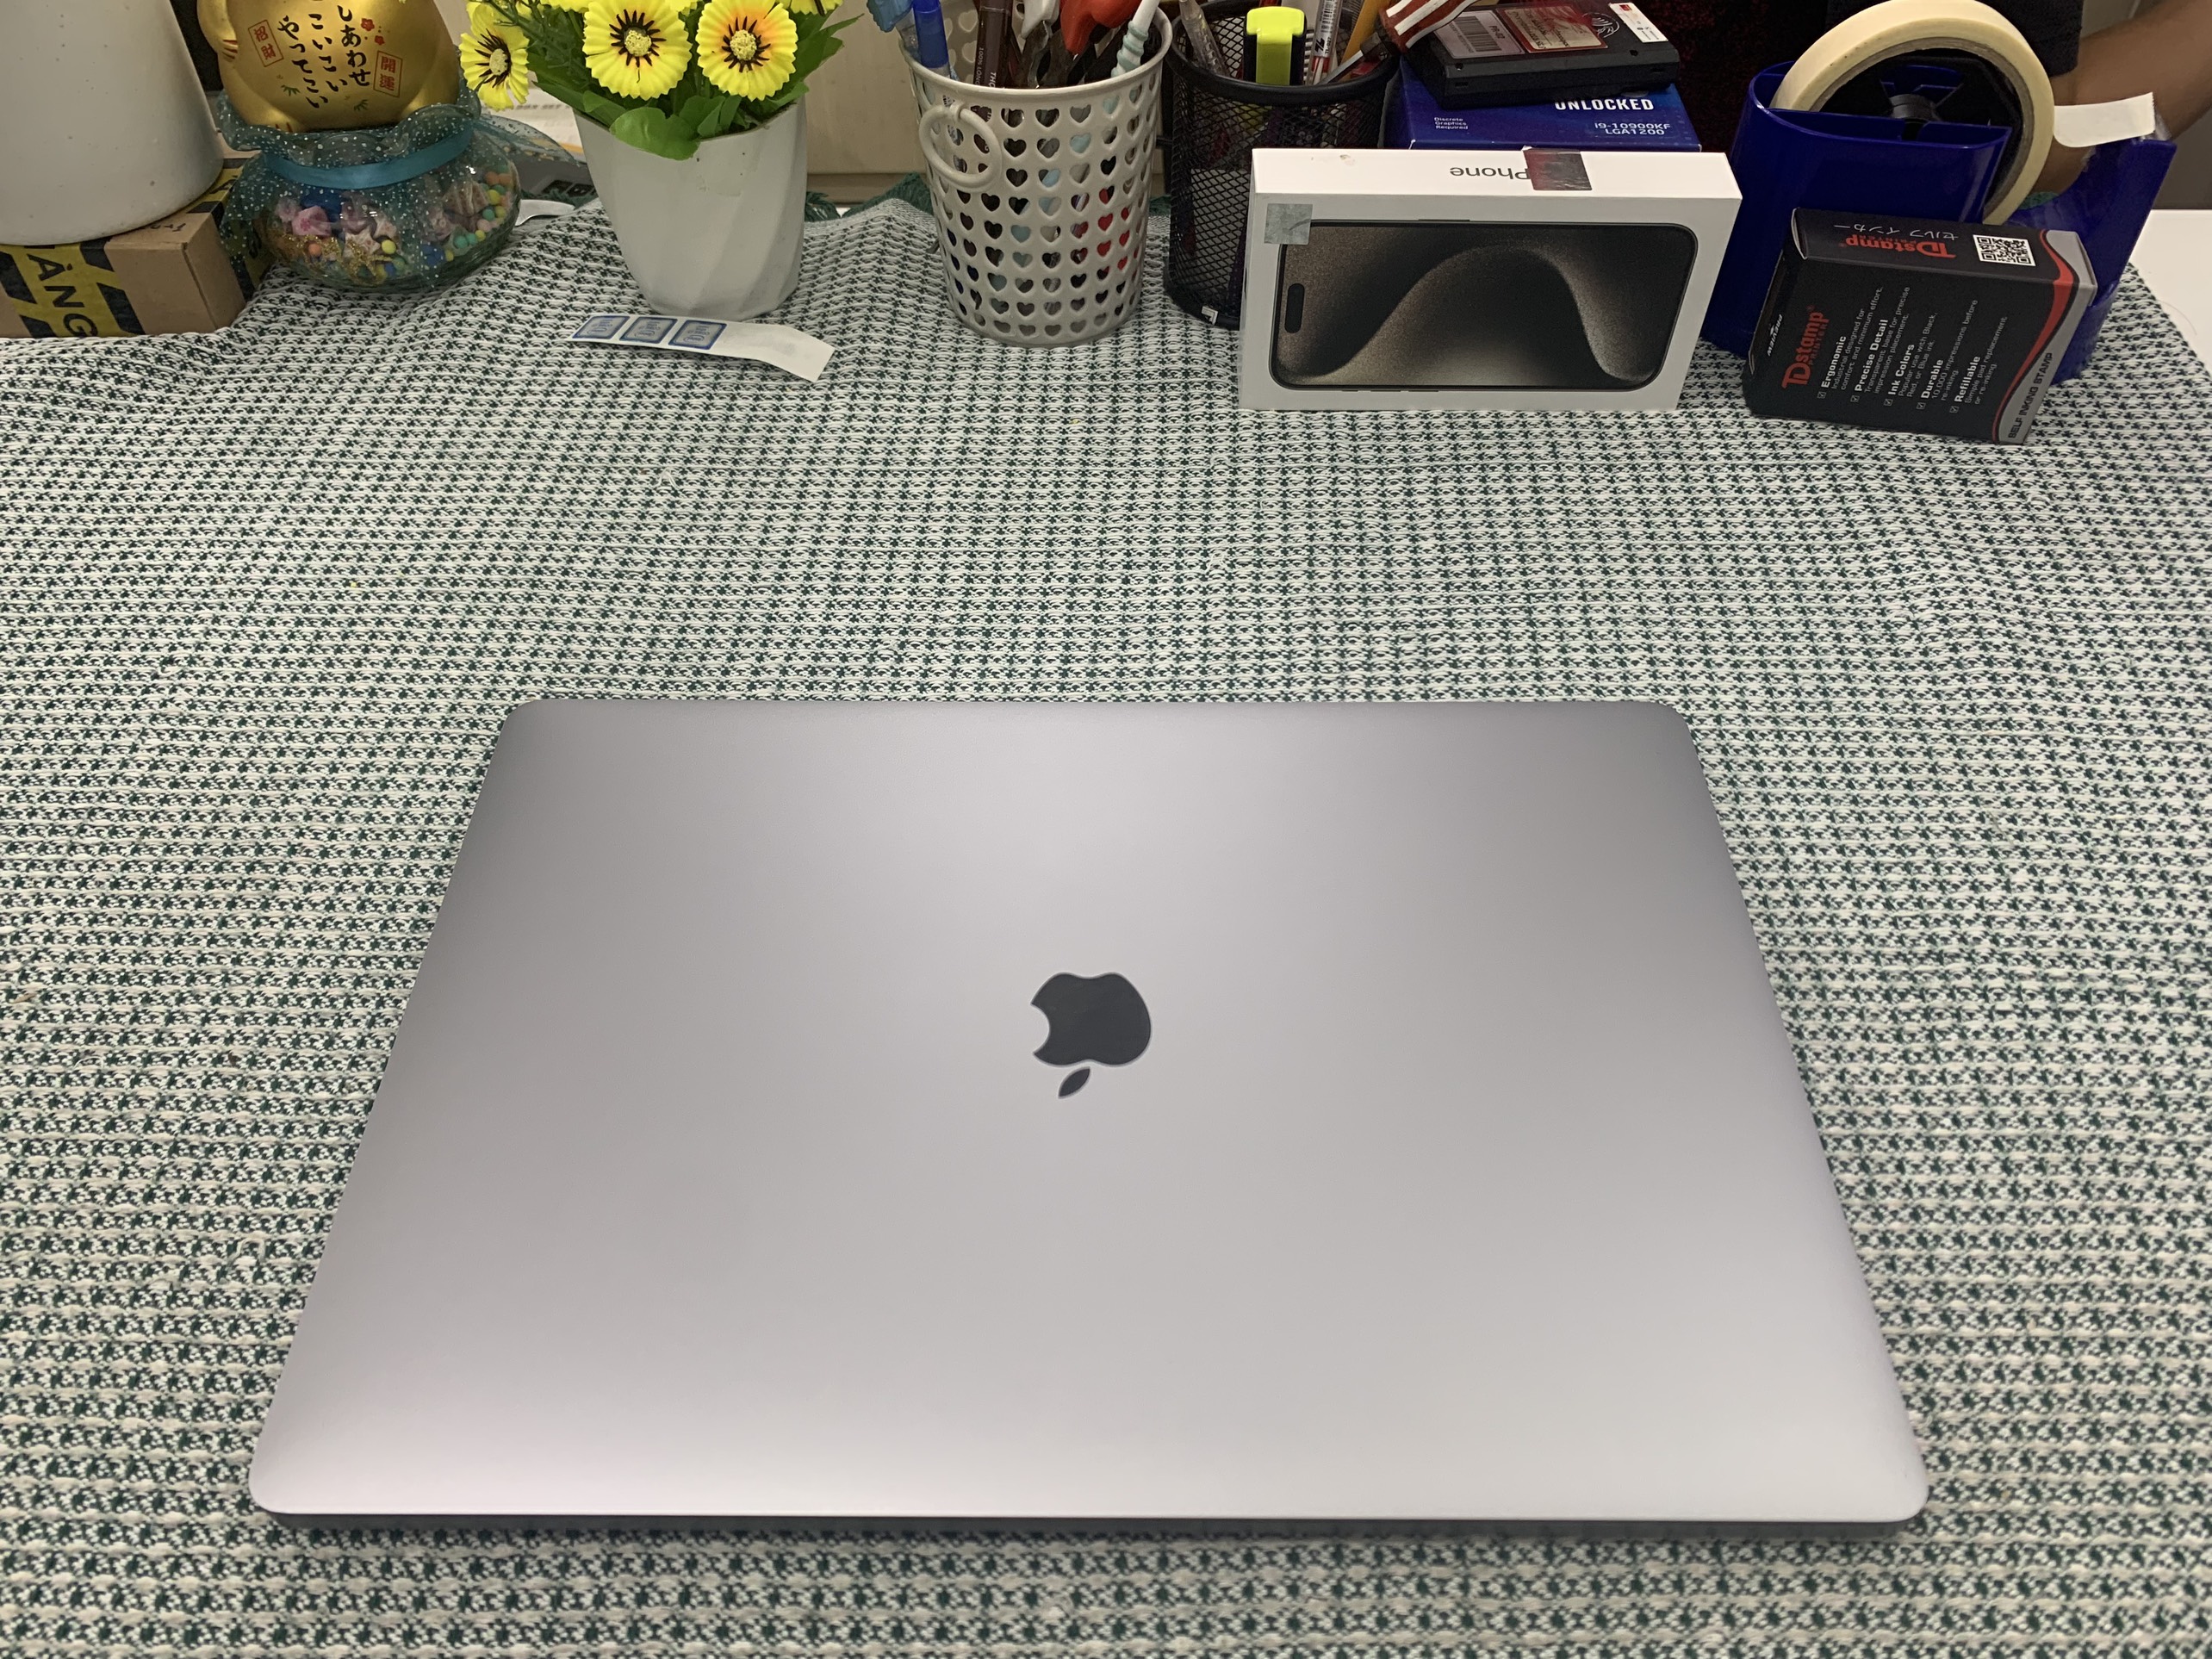 Macbook Pro 16inch 2019